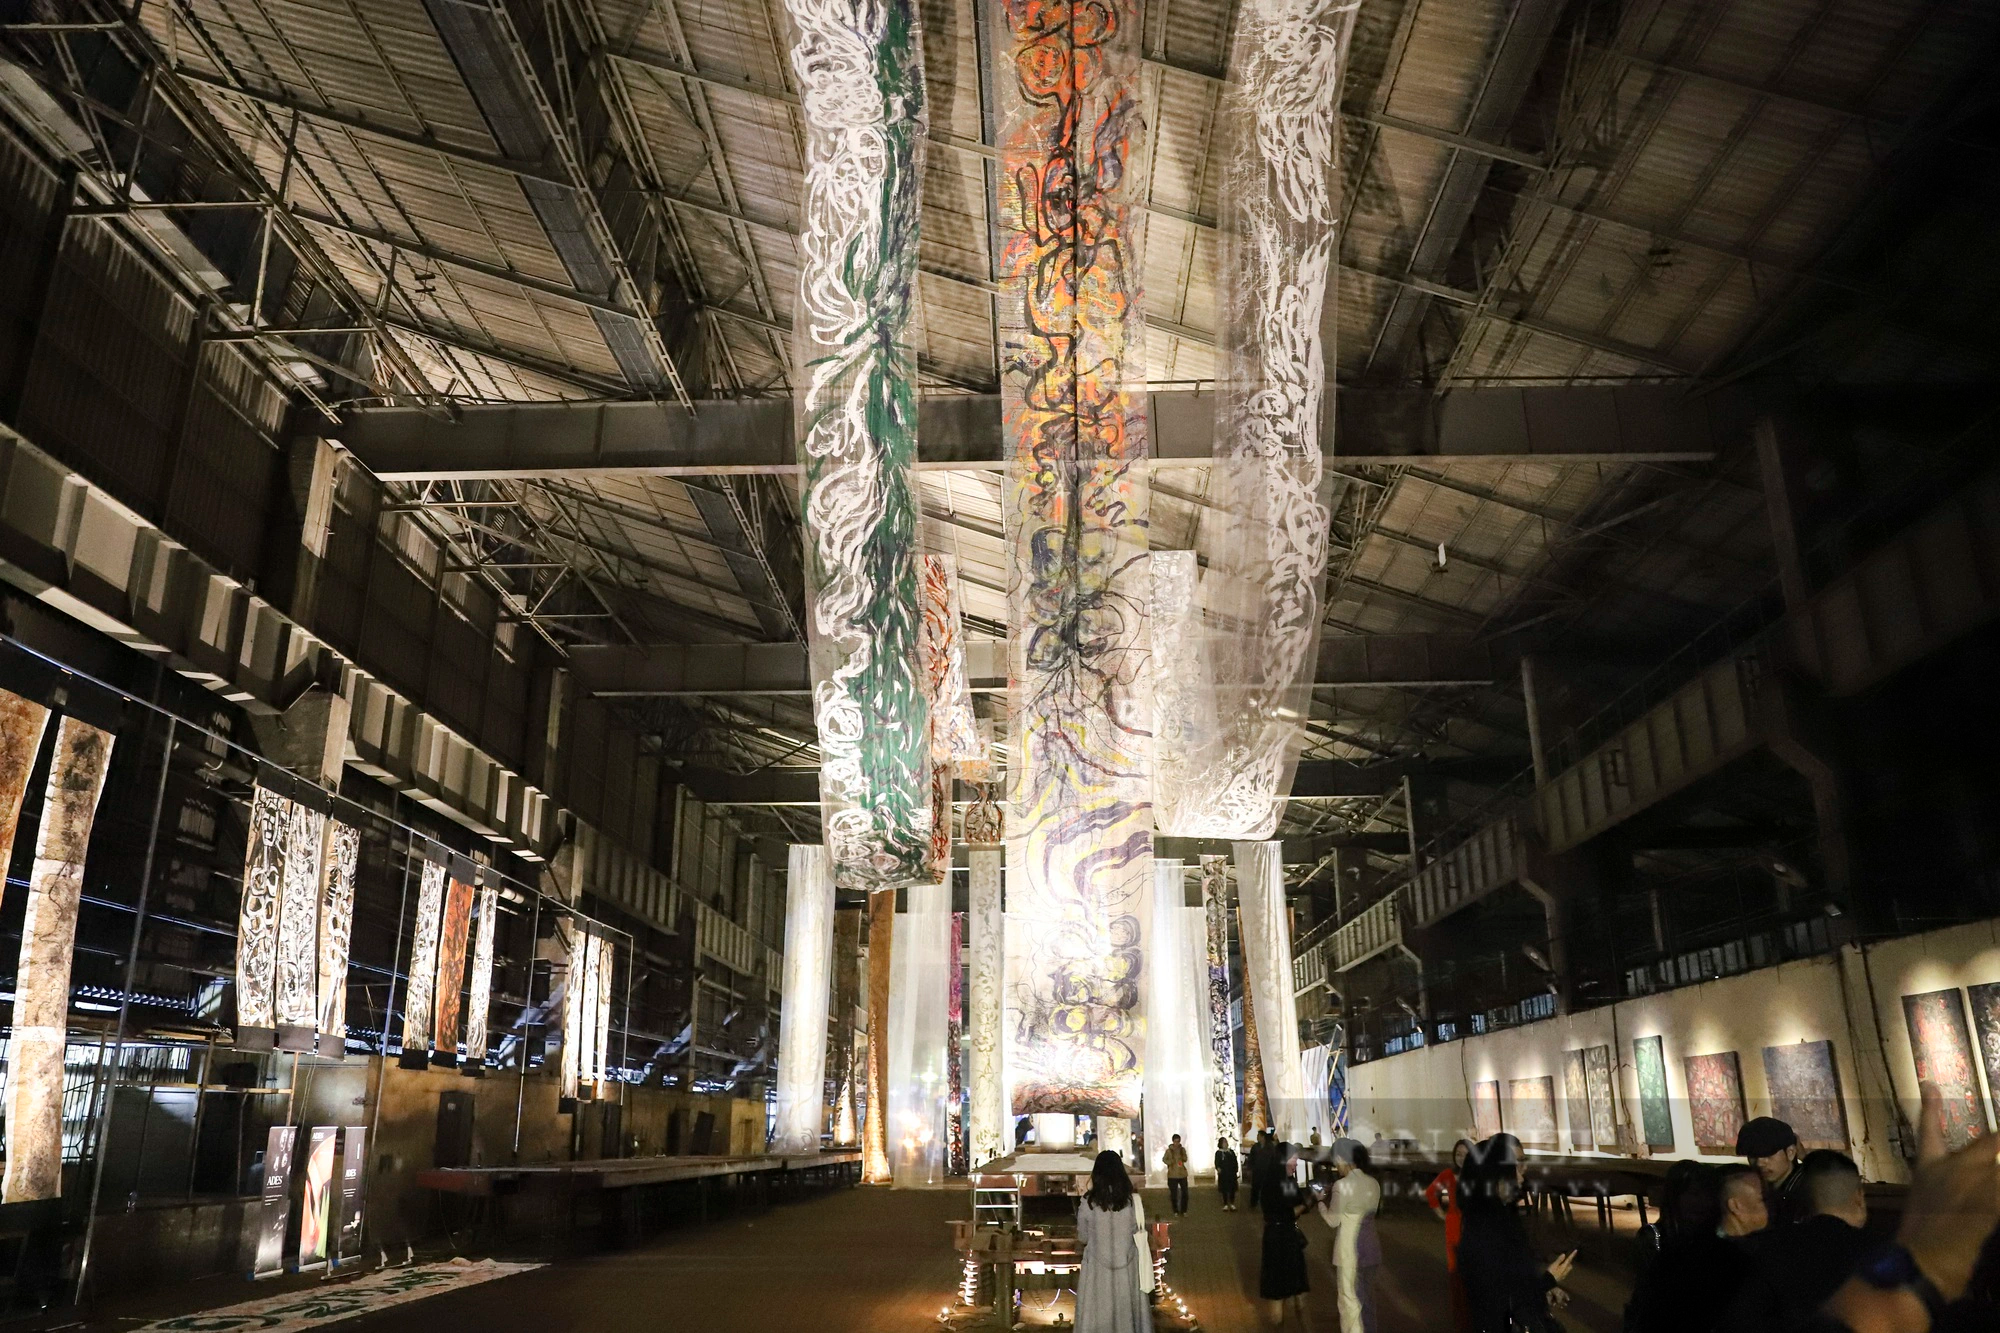 Khám phá không gian nghệ thuật đặc biệt bên trong Nhà máy Xe lửa Gia Lâm 120 năm tuổi - Ảnh 2.